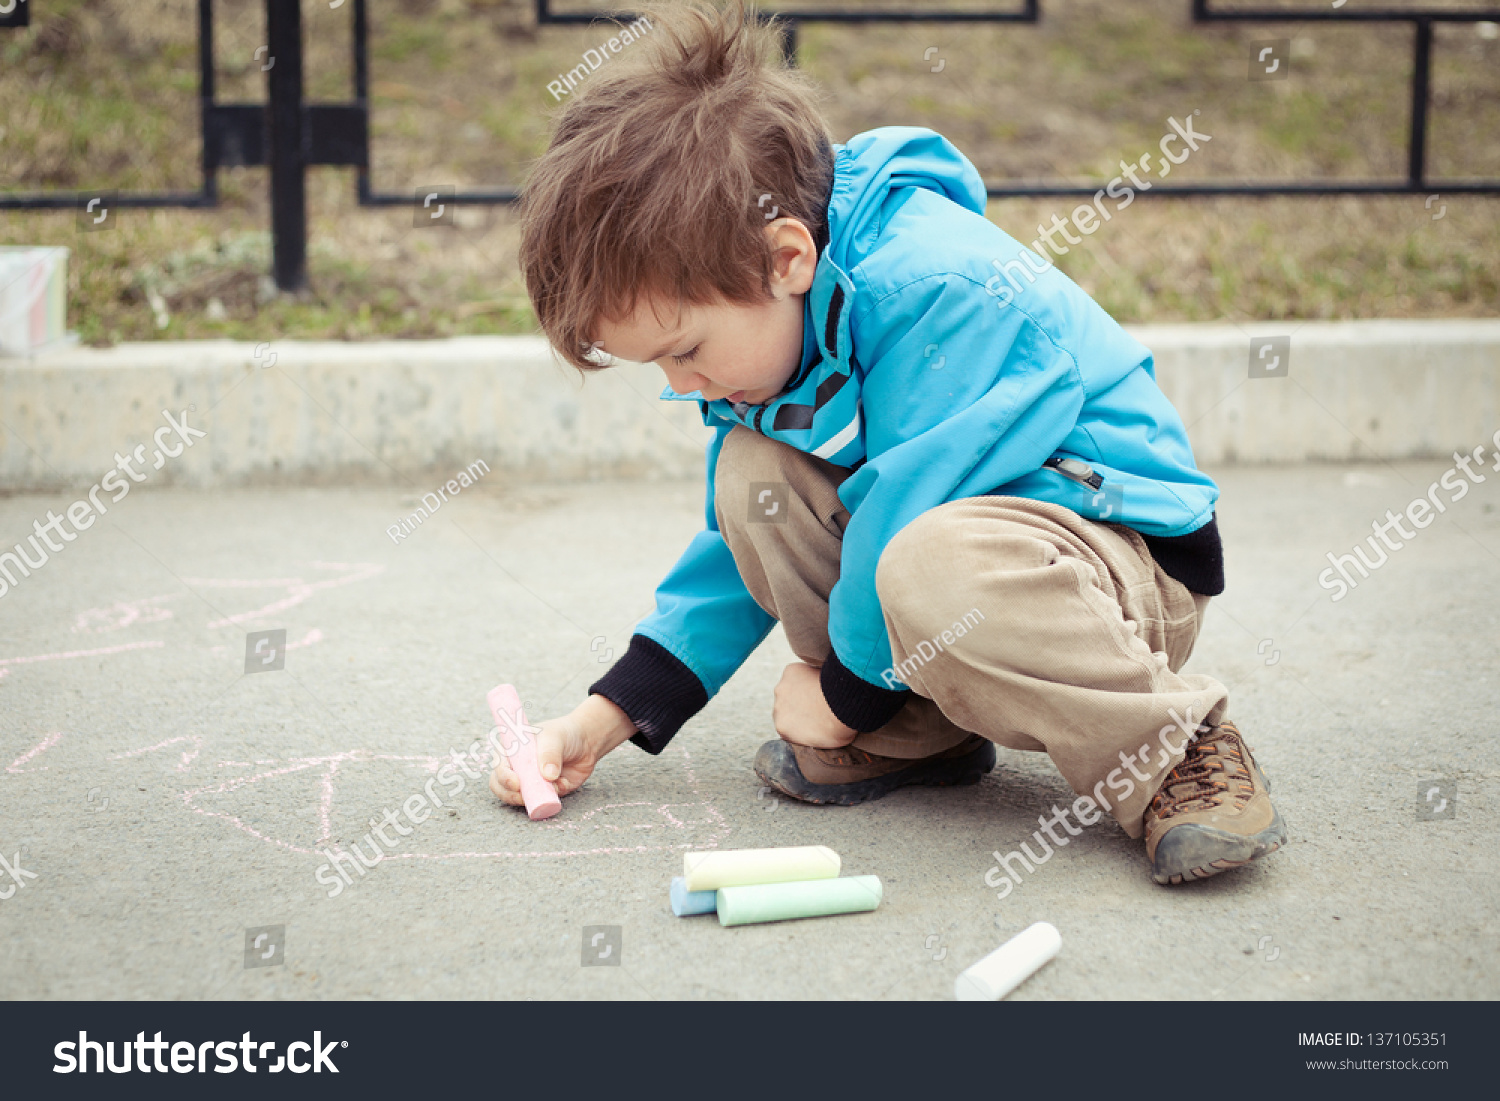 Включи девочки садятся на мальчиков. Мальчик рисует на асфальте. Мальчик рисует фото. Писающий мальчик.